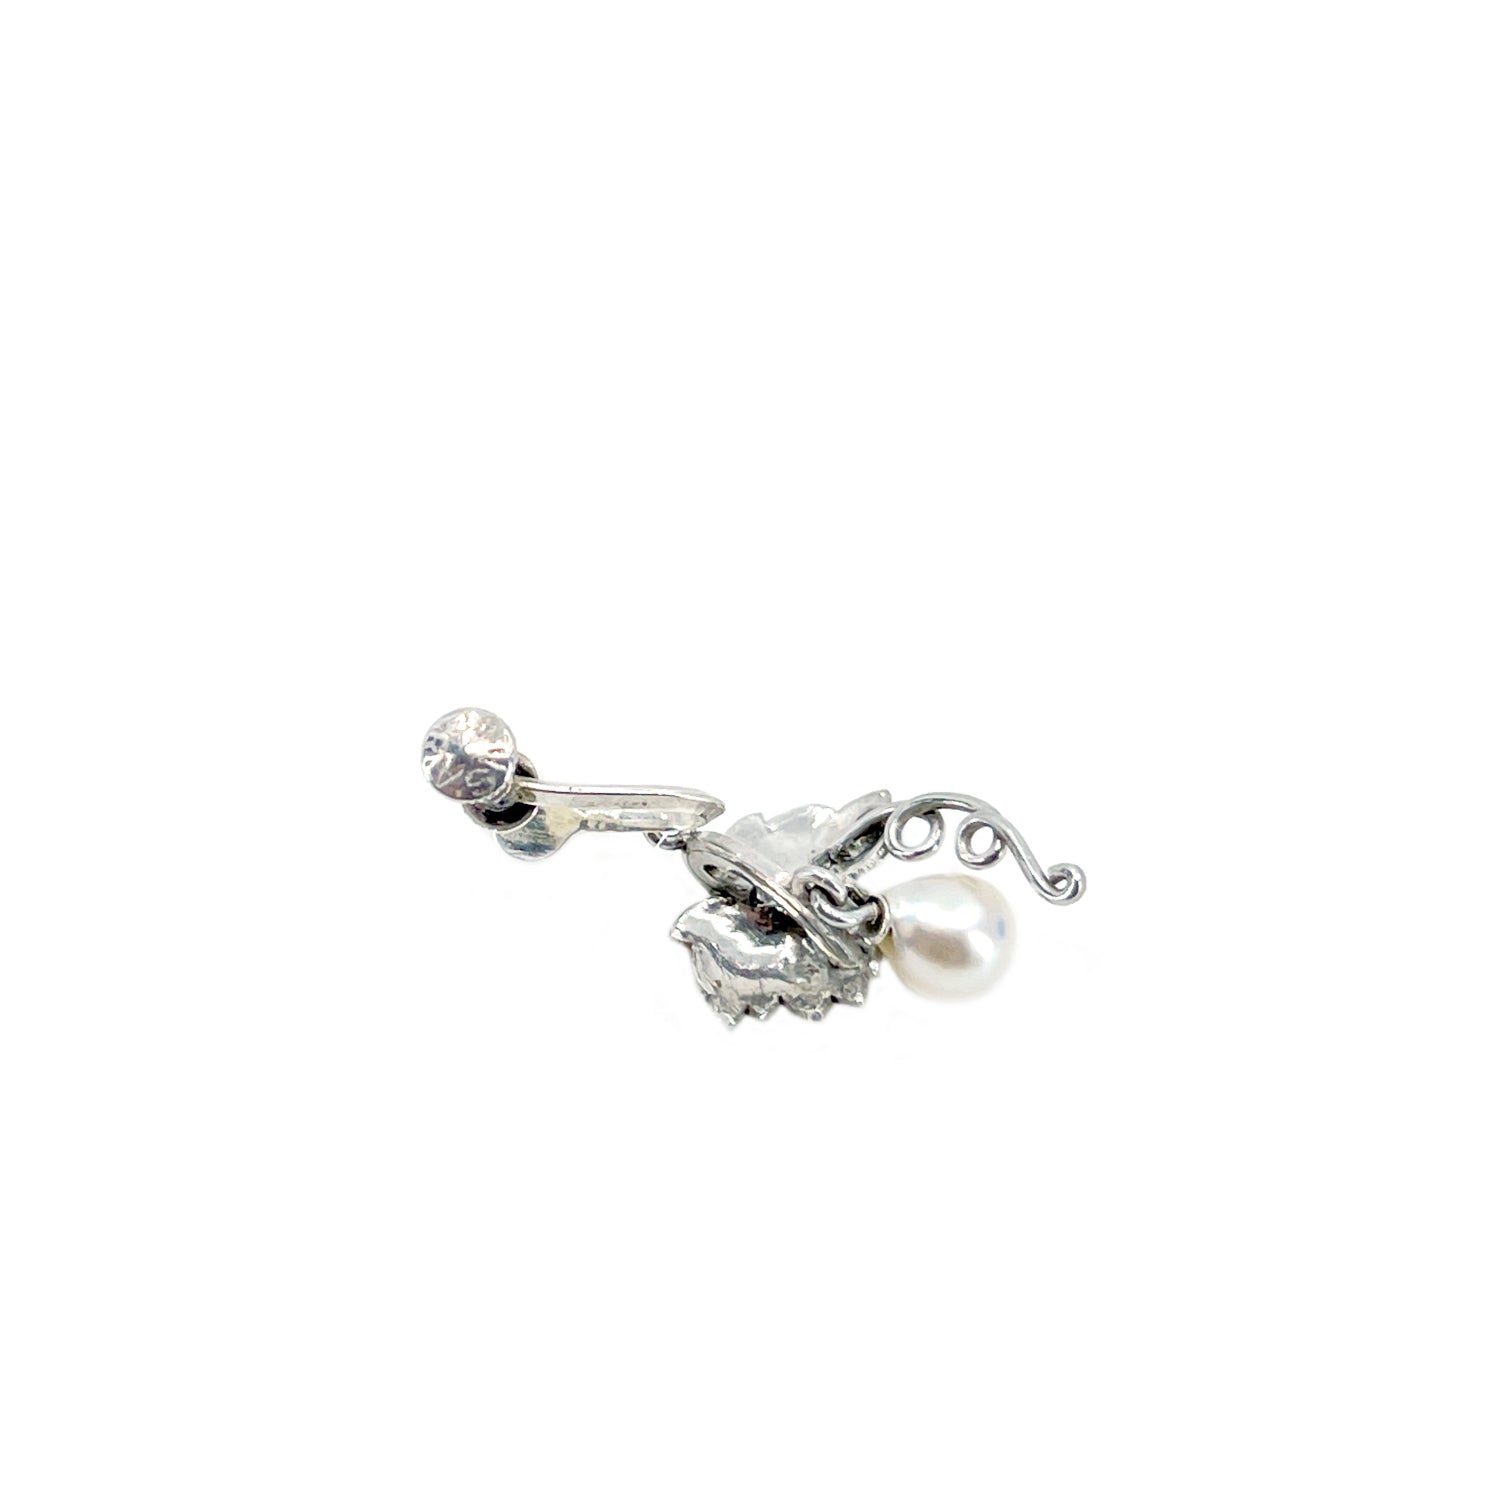 Baroque Grape Dangle Akoya Saltwater Cultured Pearl Screwback Engraved Vintage Earrings- Sterling Silver